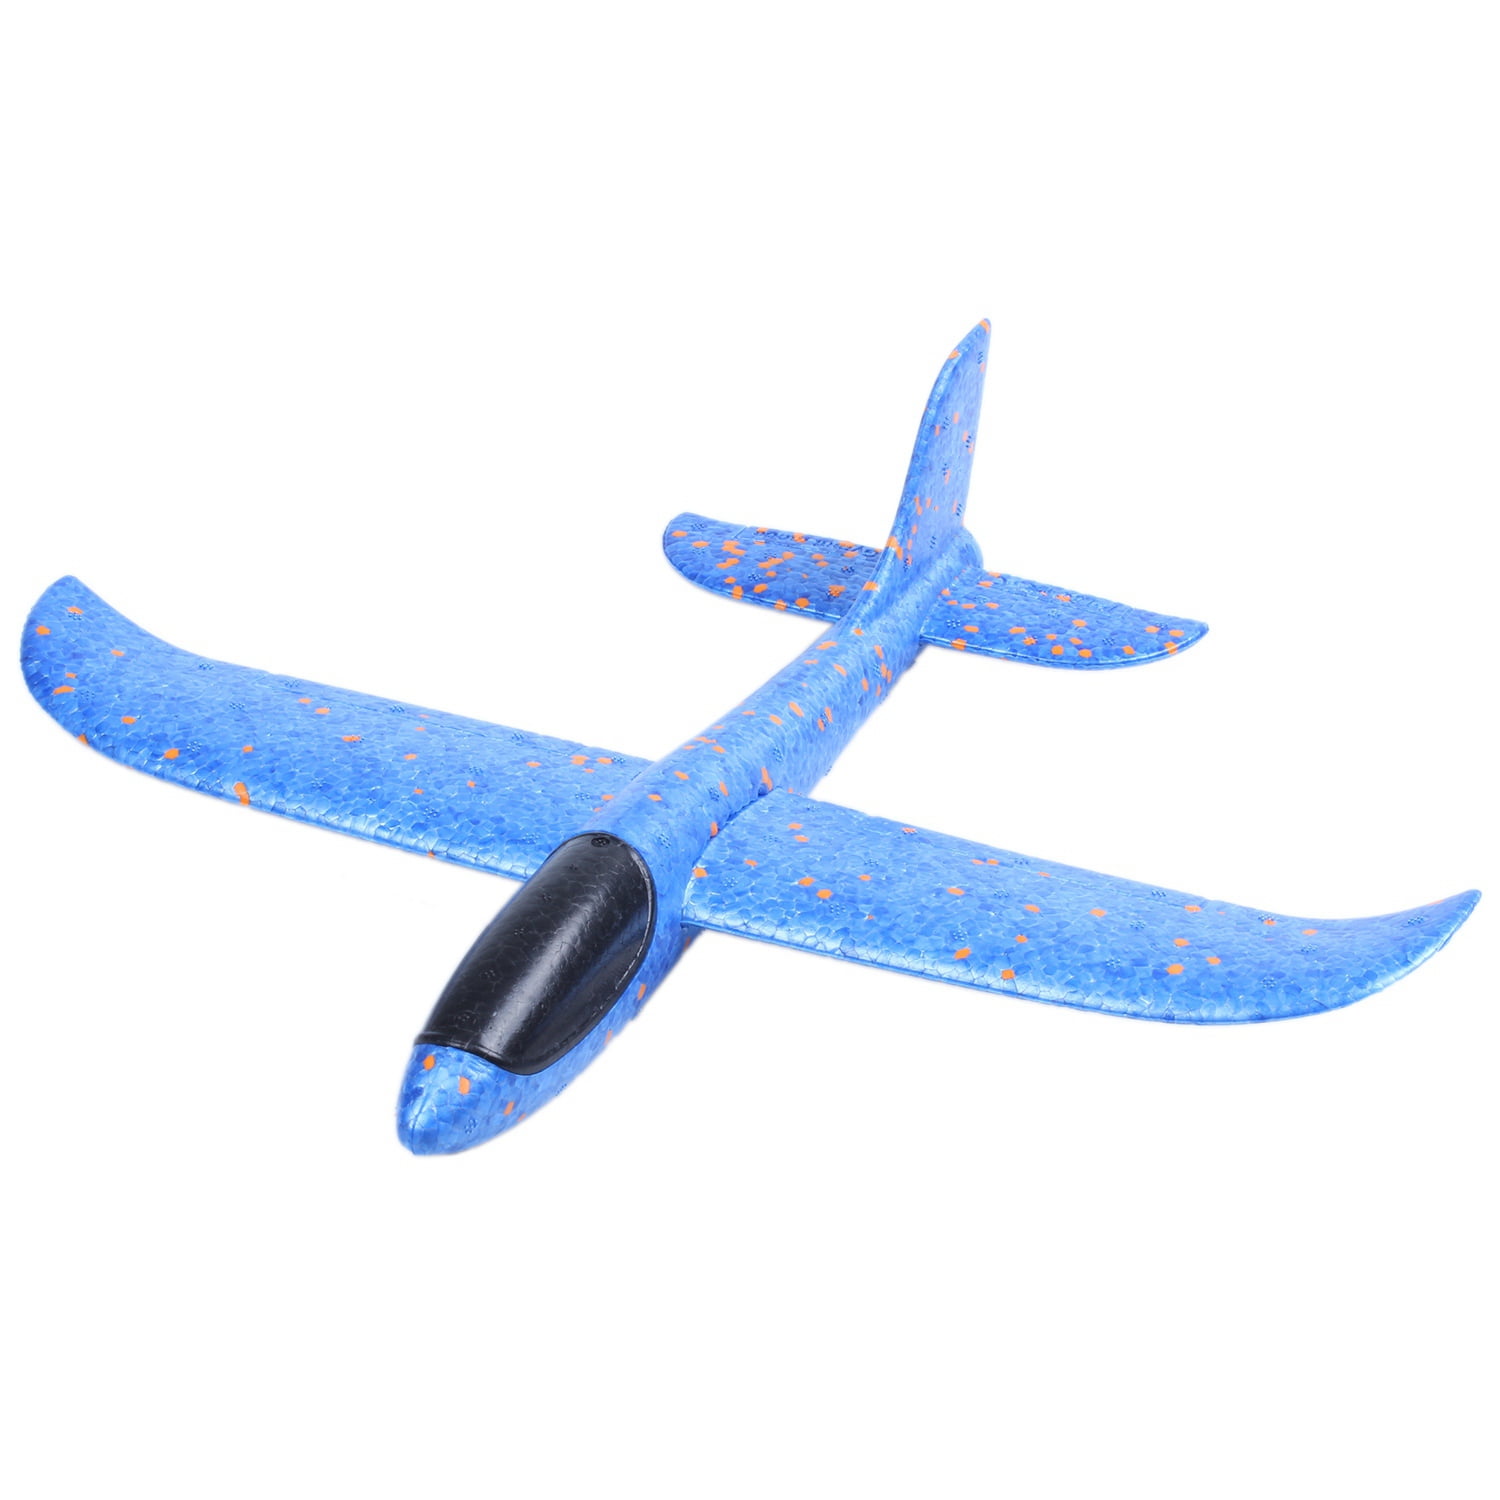 EPP Foam Hand Throw Airplane Outdoor Launch Glider Plane Kids Gift Toy  JR 